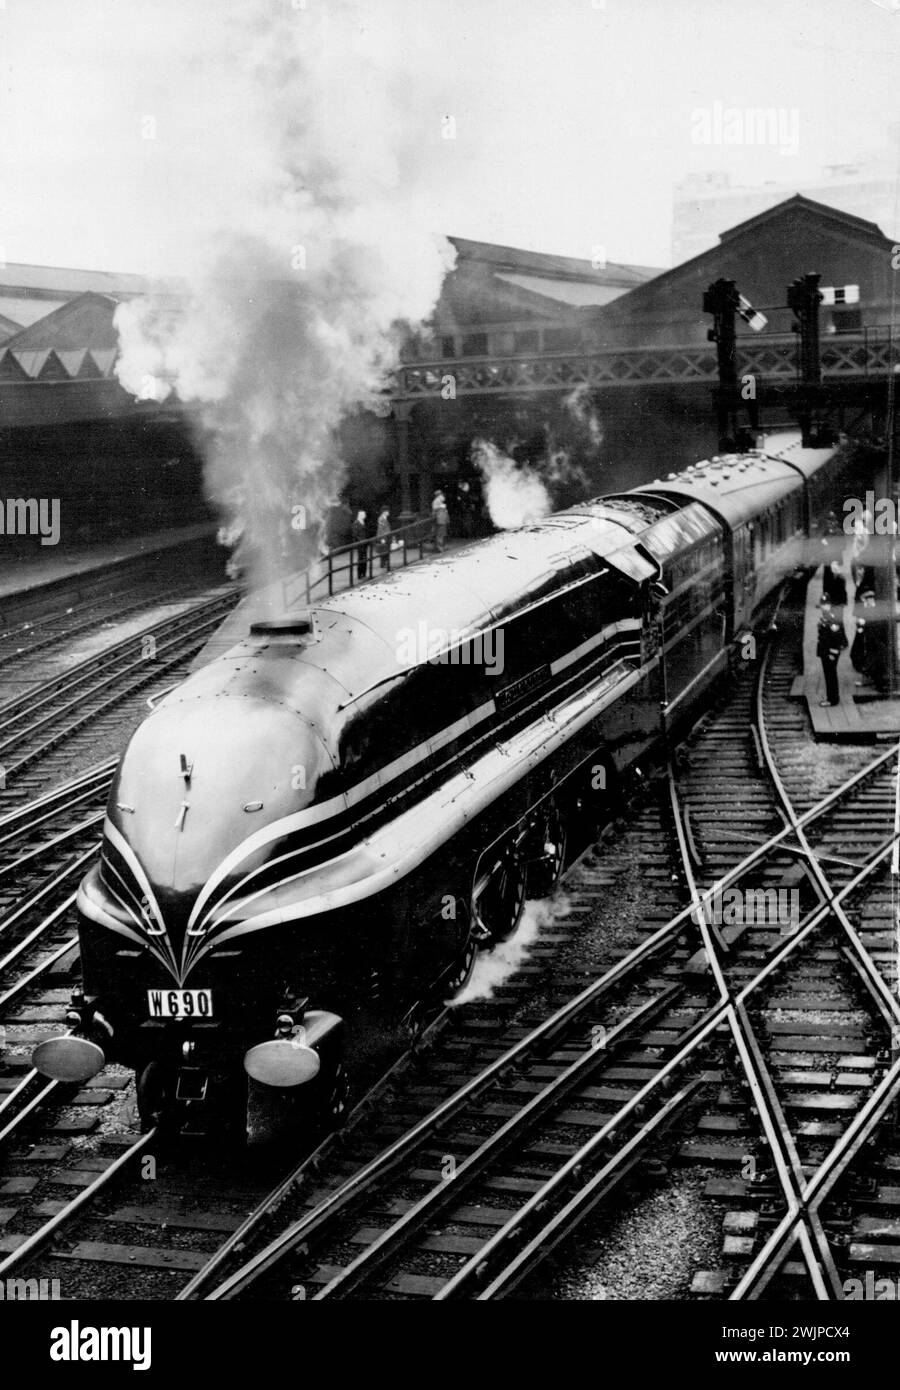 Gli esperti tedeschi prendono parte al test a lunga distanza DI Giant New L.M.S. ***** Loco -- il treno con il motore 'Duchessa di Gloucester' che parte da Euston stamattina. Quindici esperti ferroviari tedeschi - alti funzionari della Reichsbahn - stanno vedendo di persona gli ultimi sviluppi nel design della locomotiva britannica. Hanno lasciato la stazione di Euston stamattina per Glasgow come membri di un gruppo di 120 esperti di locomotive che hanno partecipato alla riunione estiva dell'Institution of Locomotive Engineers. Il treno viene trainato dalla gigantesca locomotiva nuova L.M.S. aerodinamica ***** e questo viaggio è un avversario ... Foto Stock